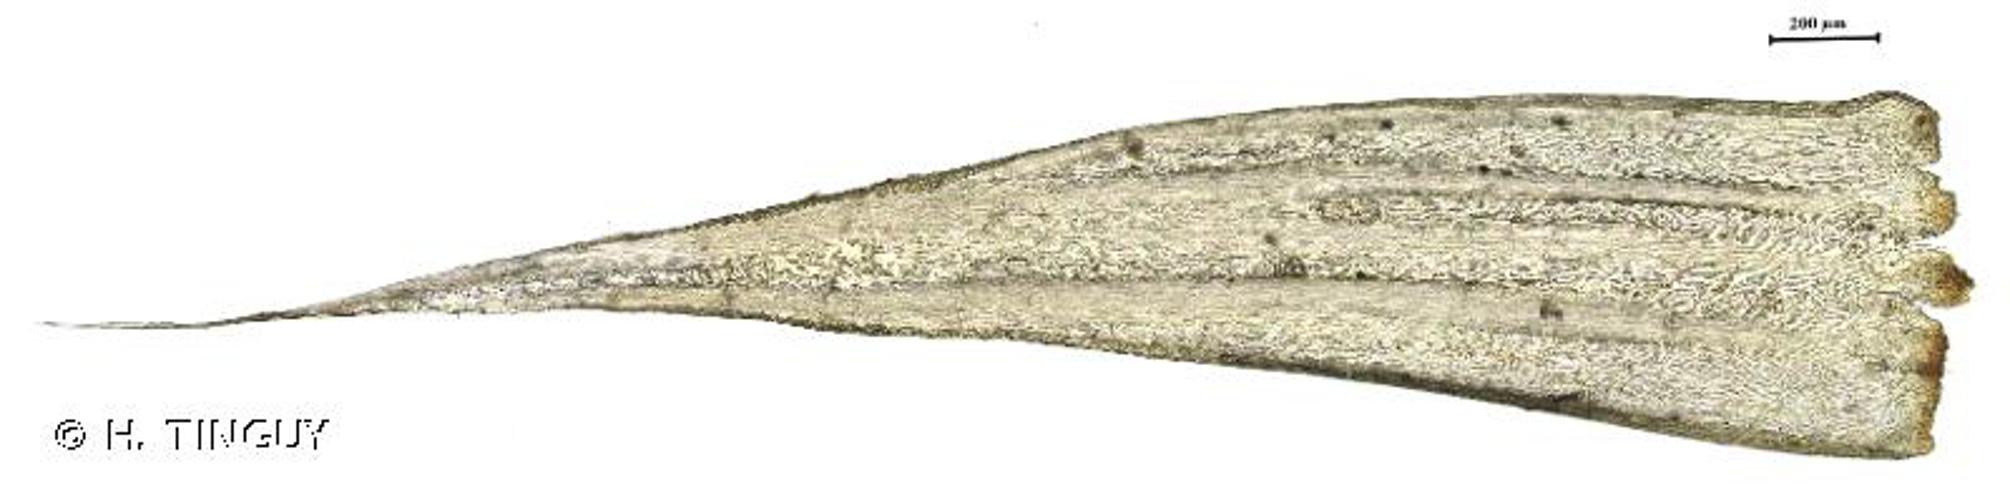 <i>Orthothecium rufescens</i> (Dicks. ex Brid.) Schimp., 1851 © H. TINGUY